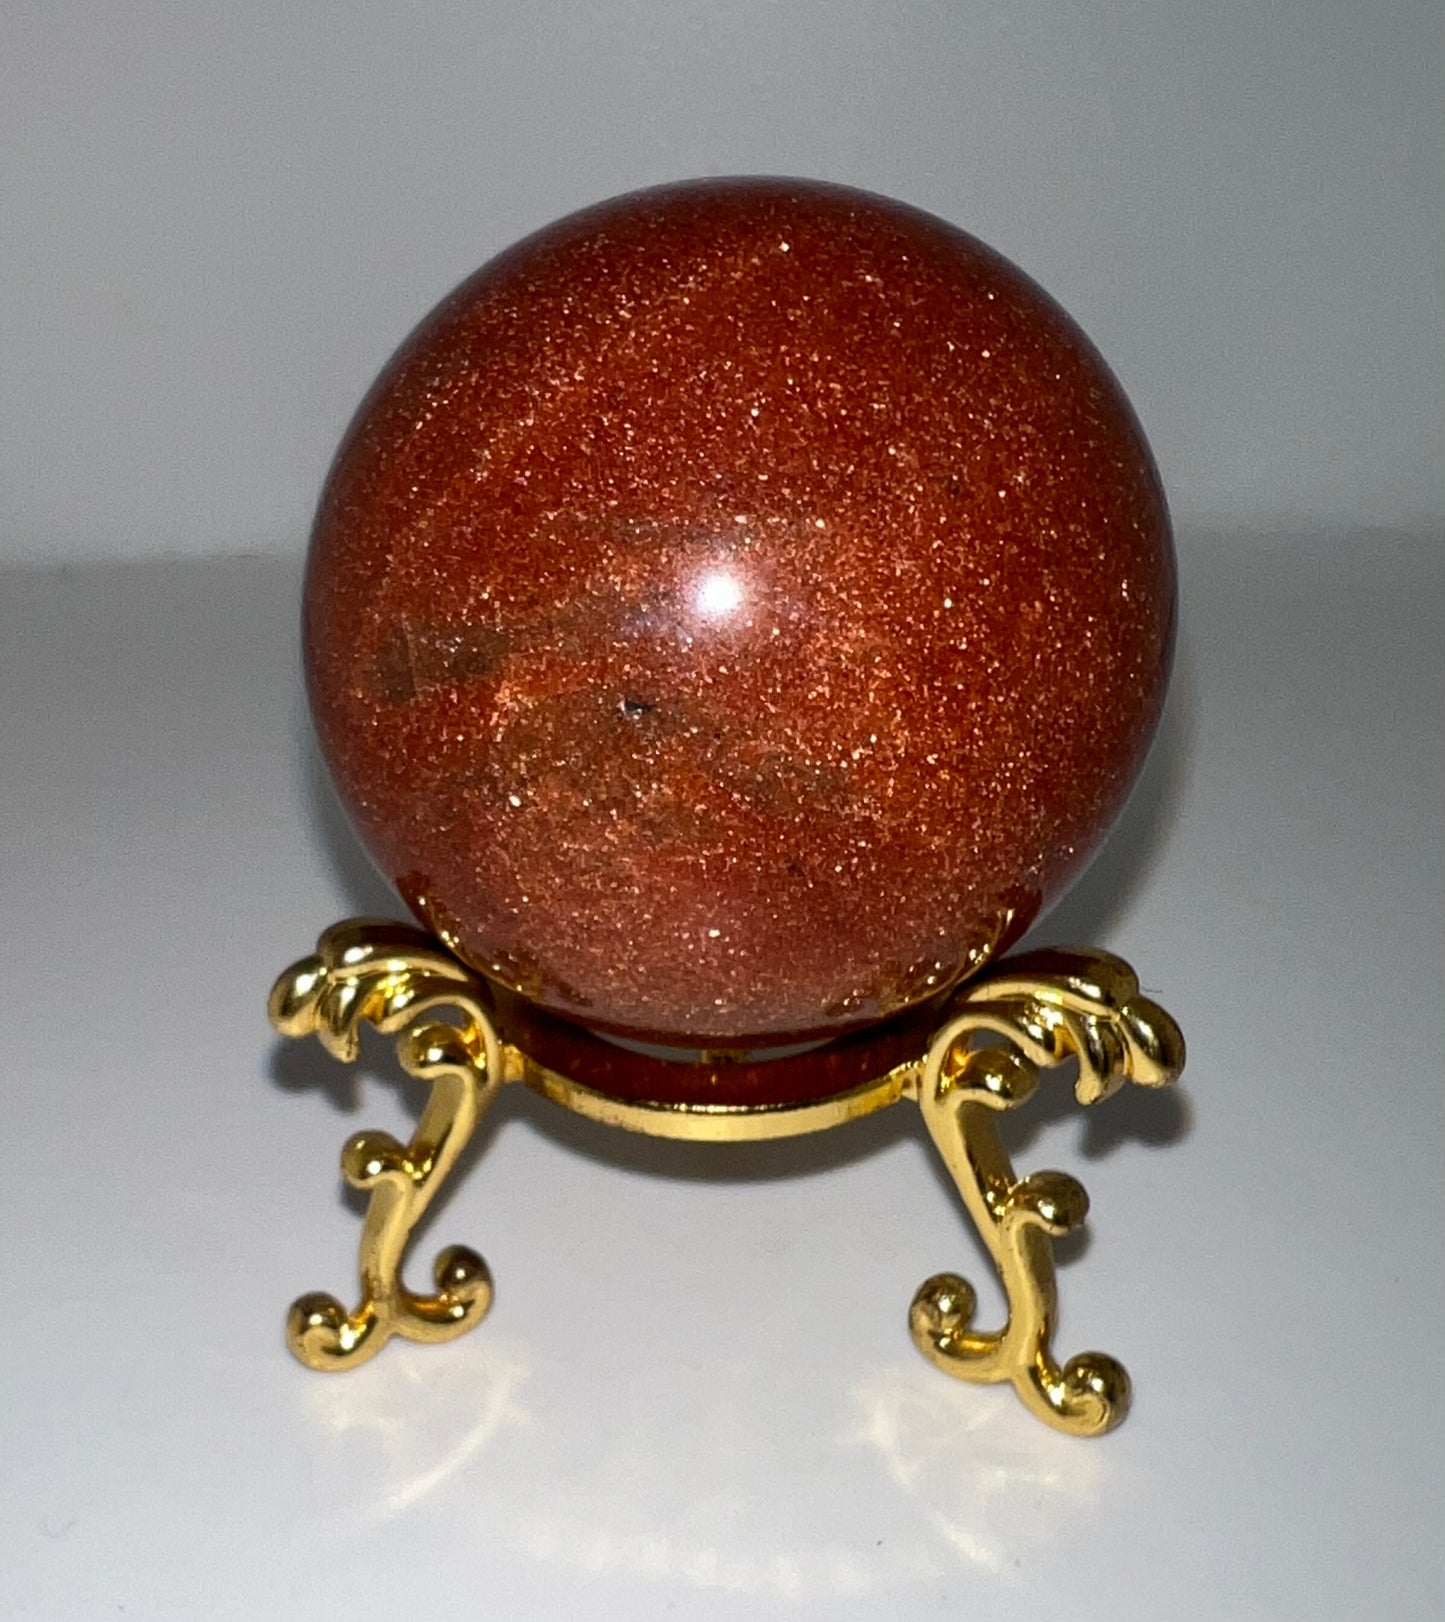 Gold Sandstone Sphere